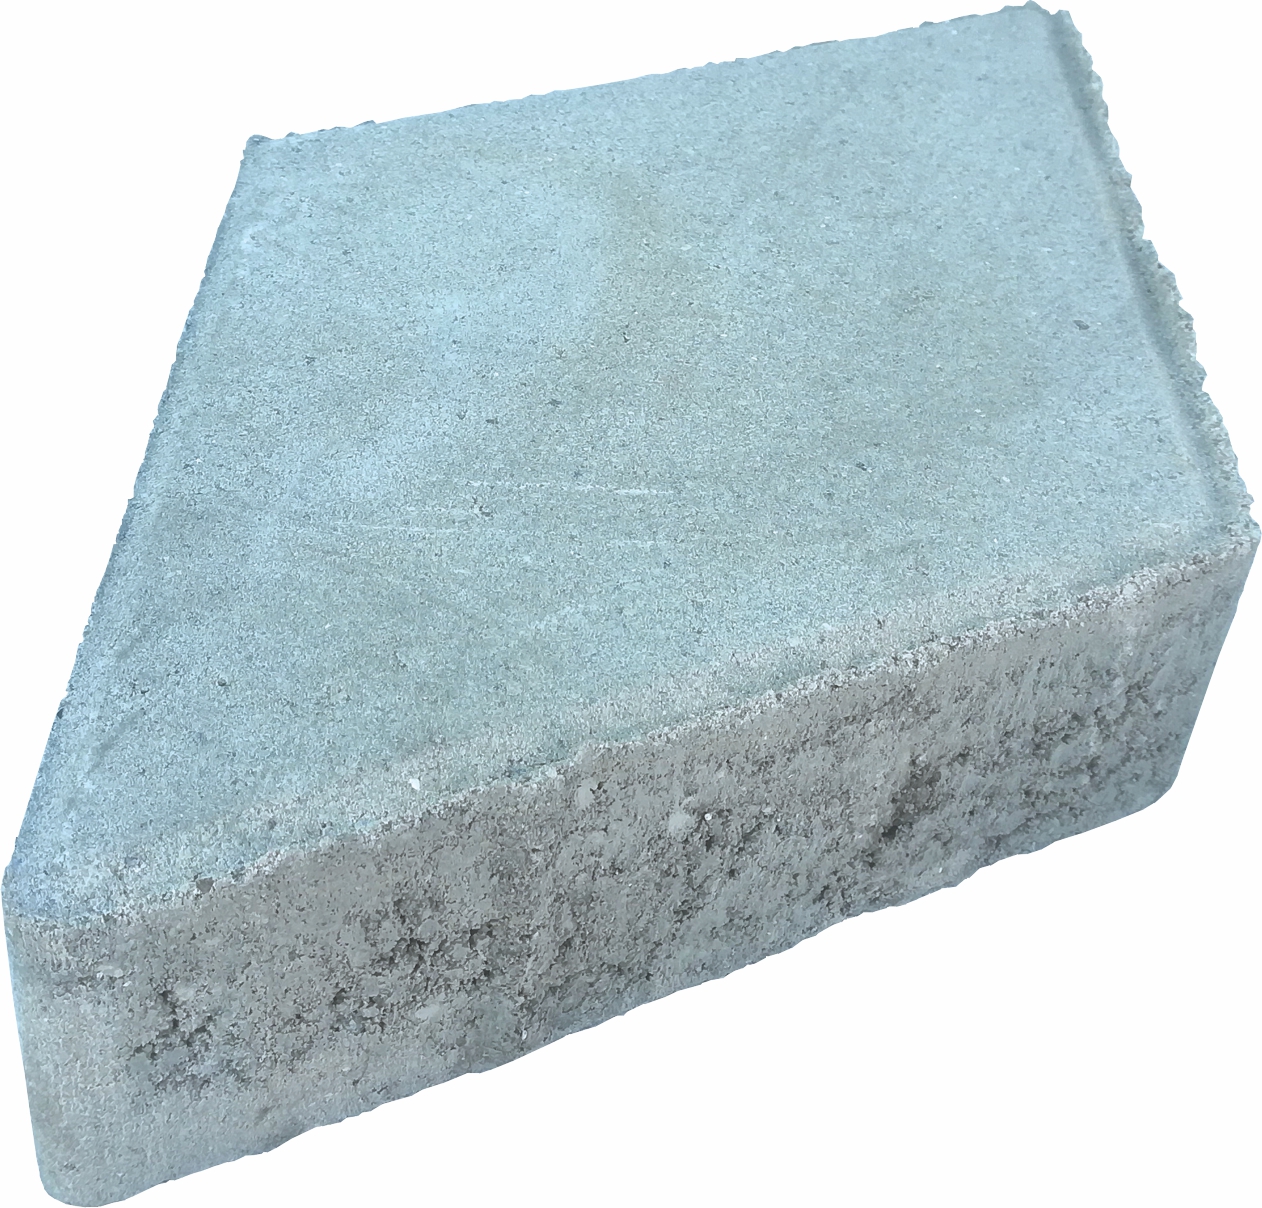 Pavele vibropresate din beton format 34 x 20 cm grosime 6 cm SYMM 23 culoare alba